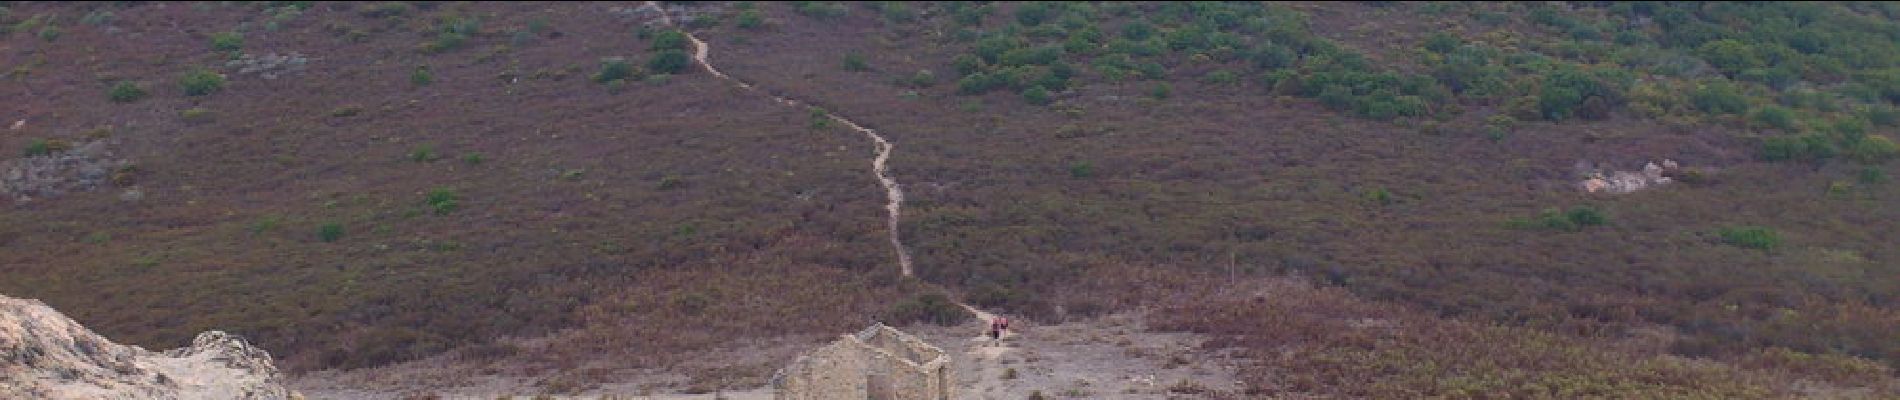 Point d'intérêt Appietto - 16 - Redecendons du Rocher des Gozzi pour grimper en face sur la Punta Pastinaca (814 m) - Photo